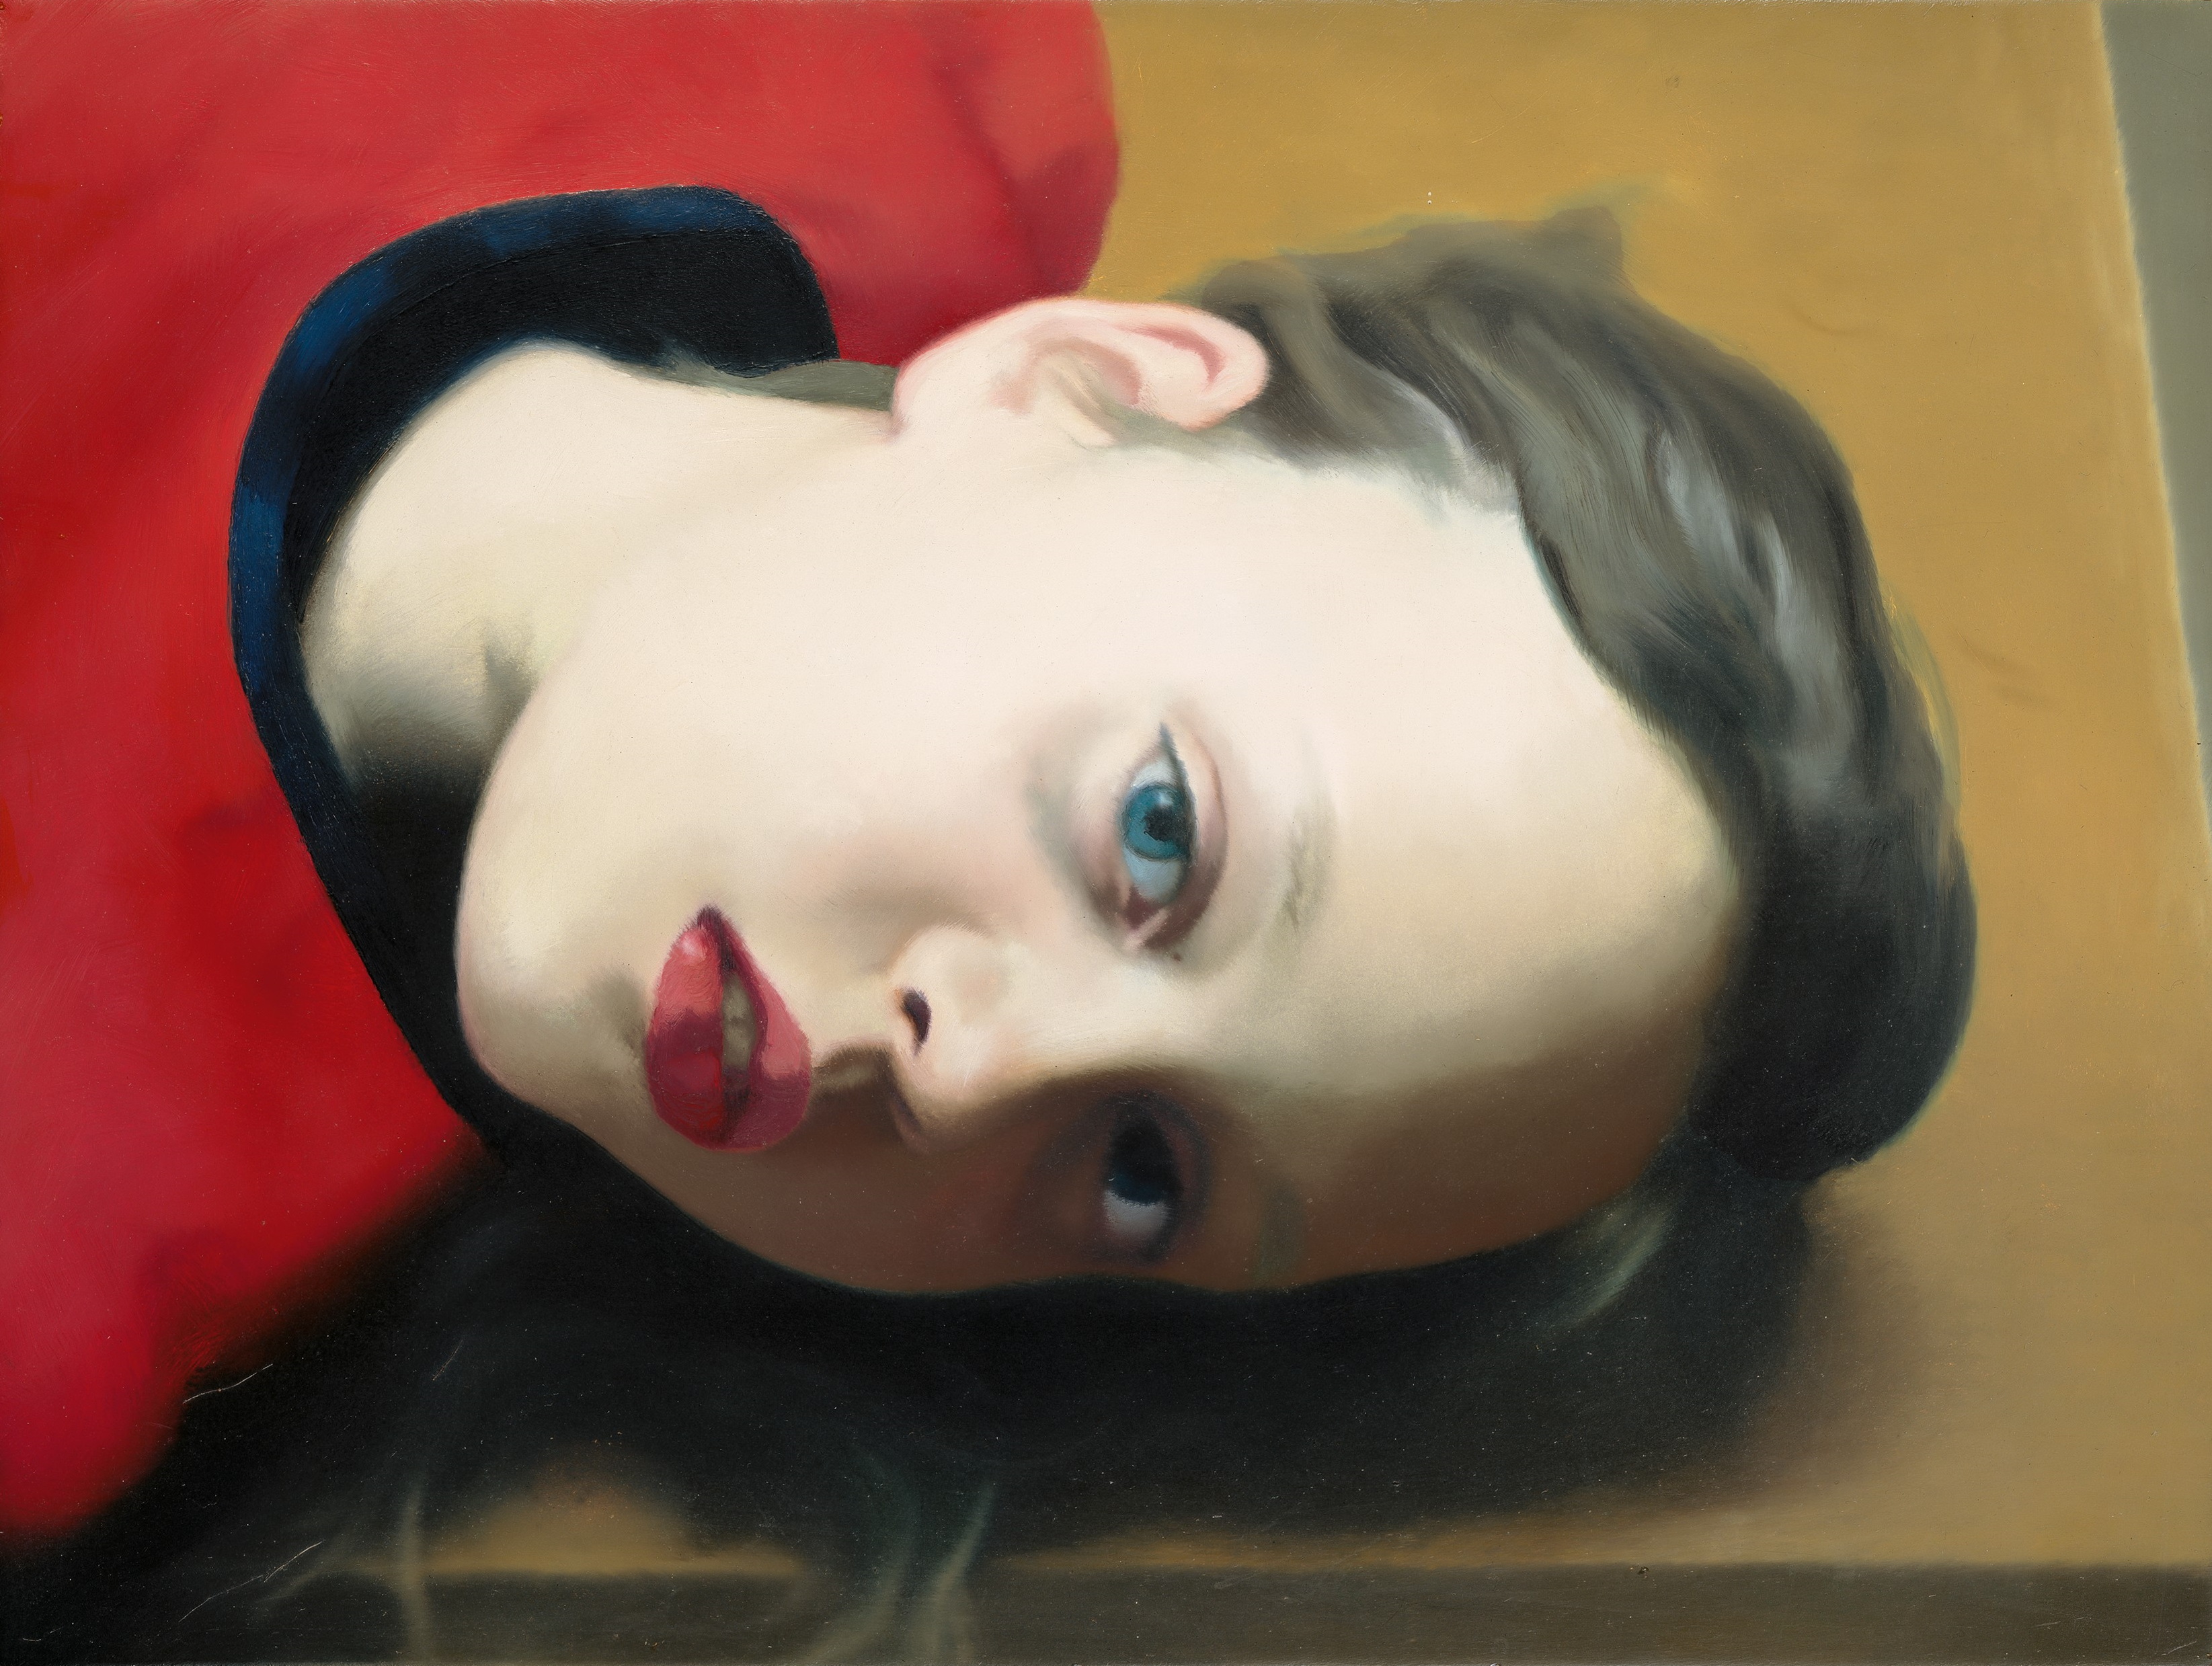 Szabadság, kötődés, elszakadás – A Gerhard Richter. Valós látszat című kiállítás a Nemzeti Galériában 